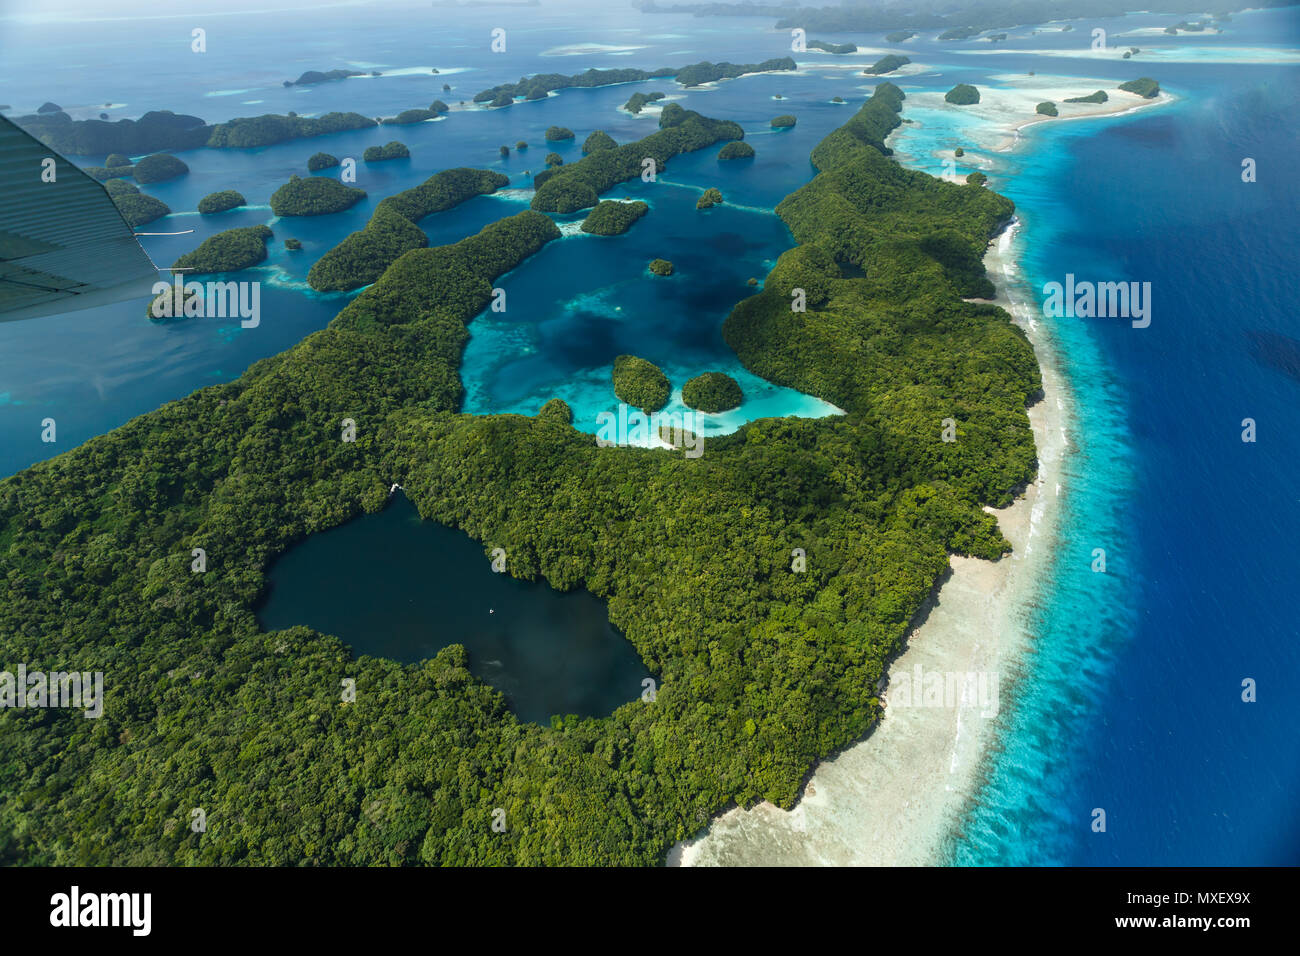 Vue aérienne de curieux modèles de récifs et atolls, et de la végétation sur l'île avec un lac au milieu Banque D'Images